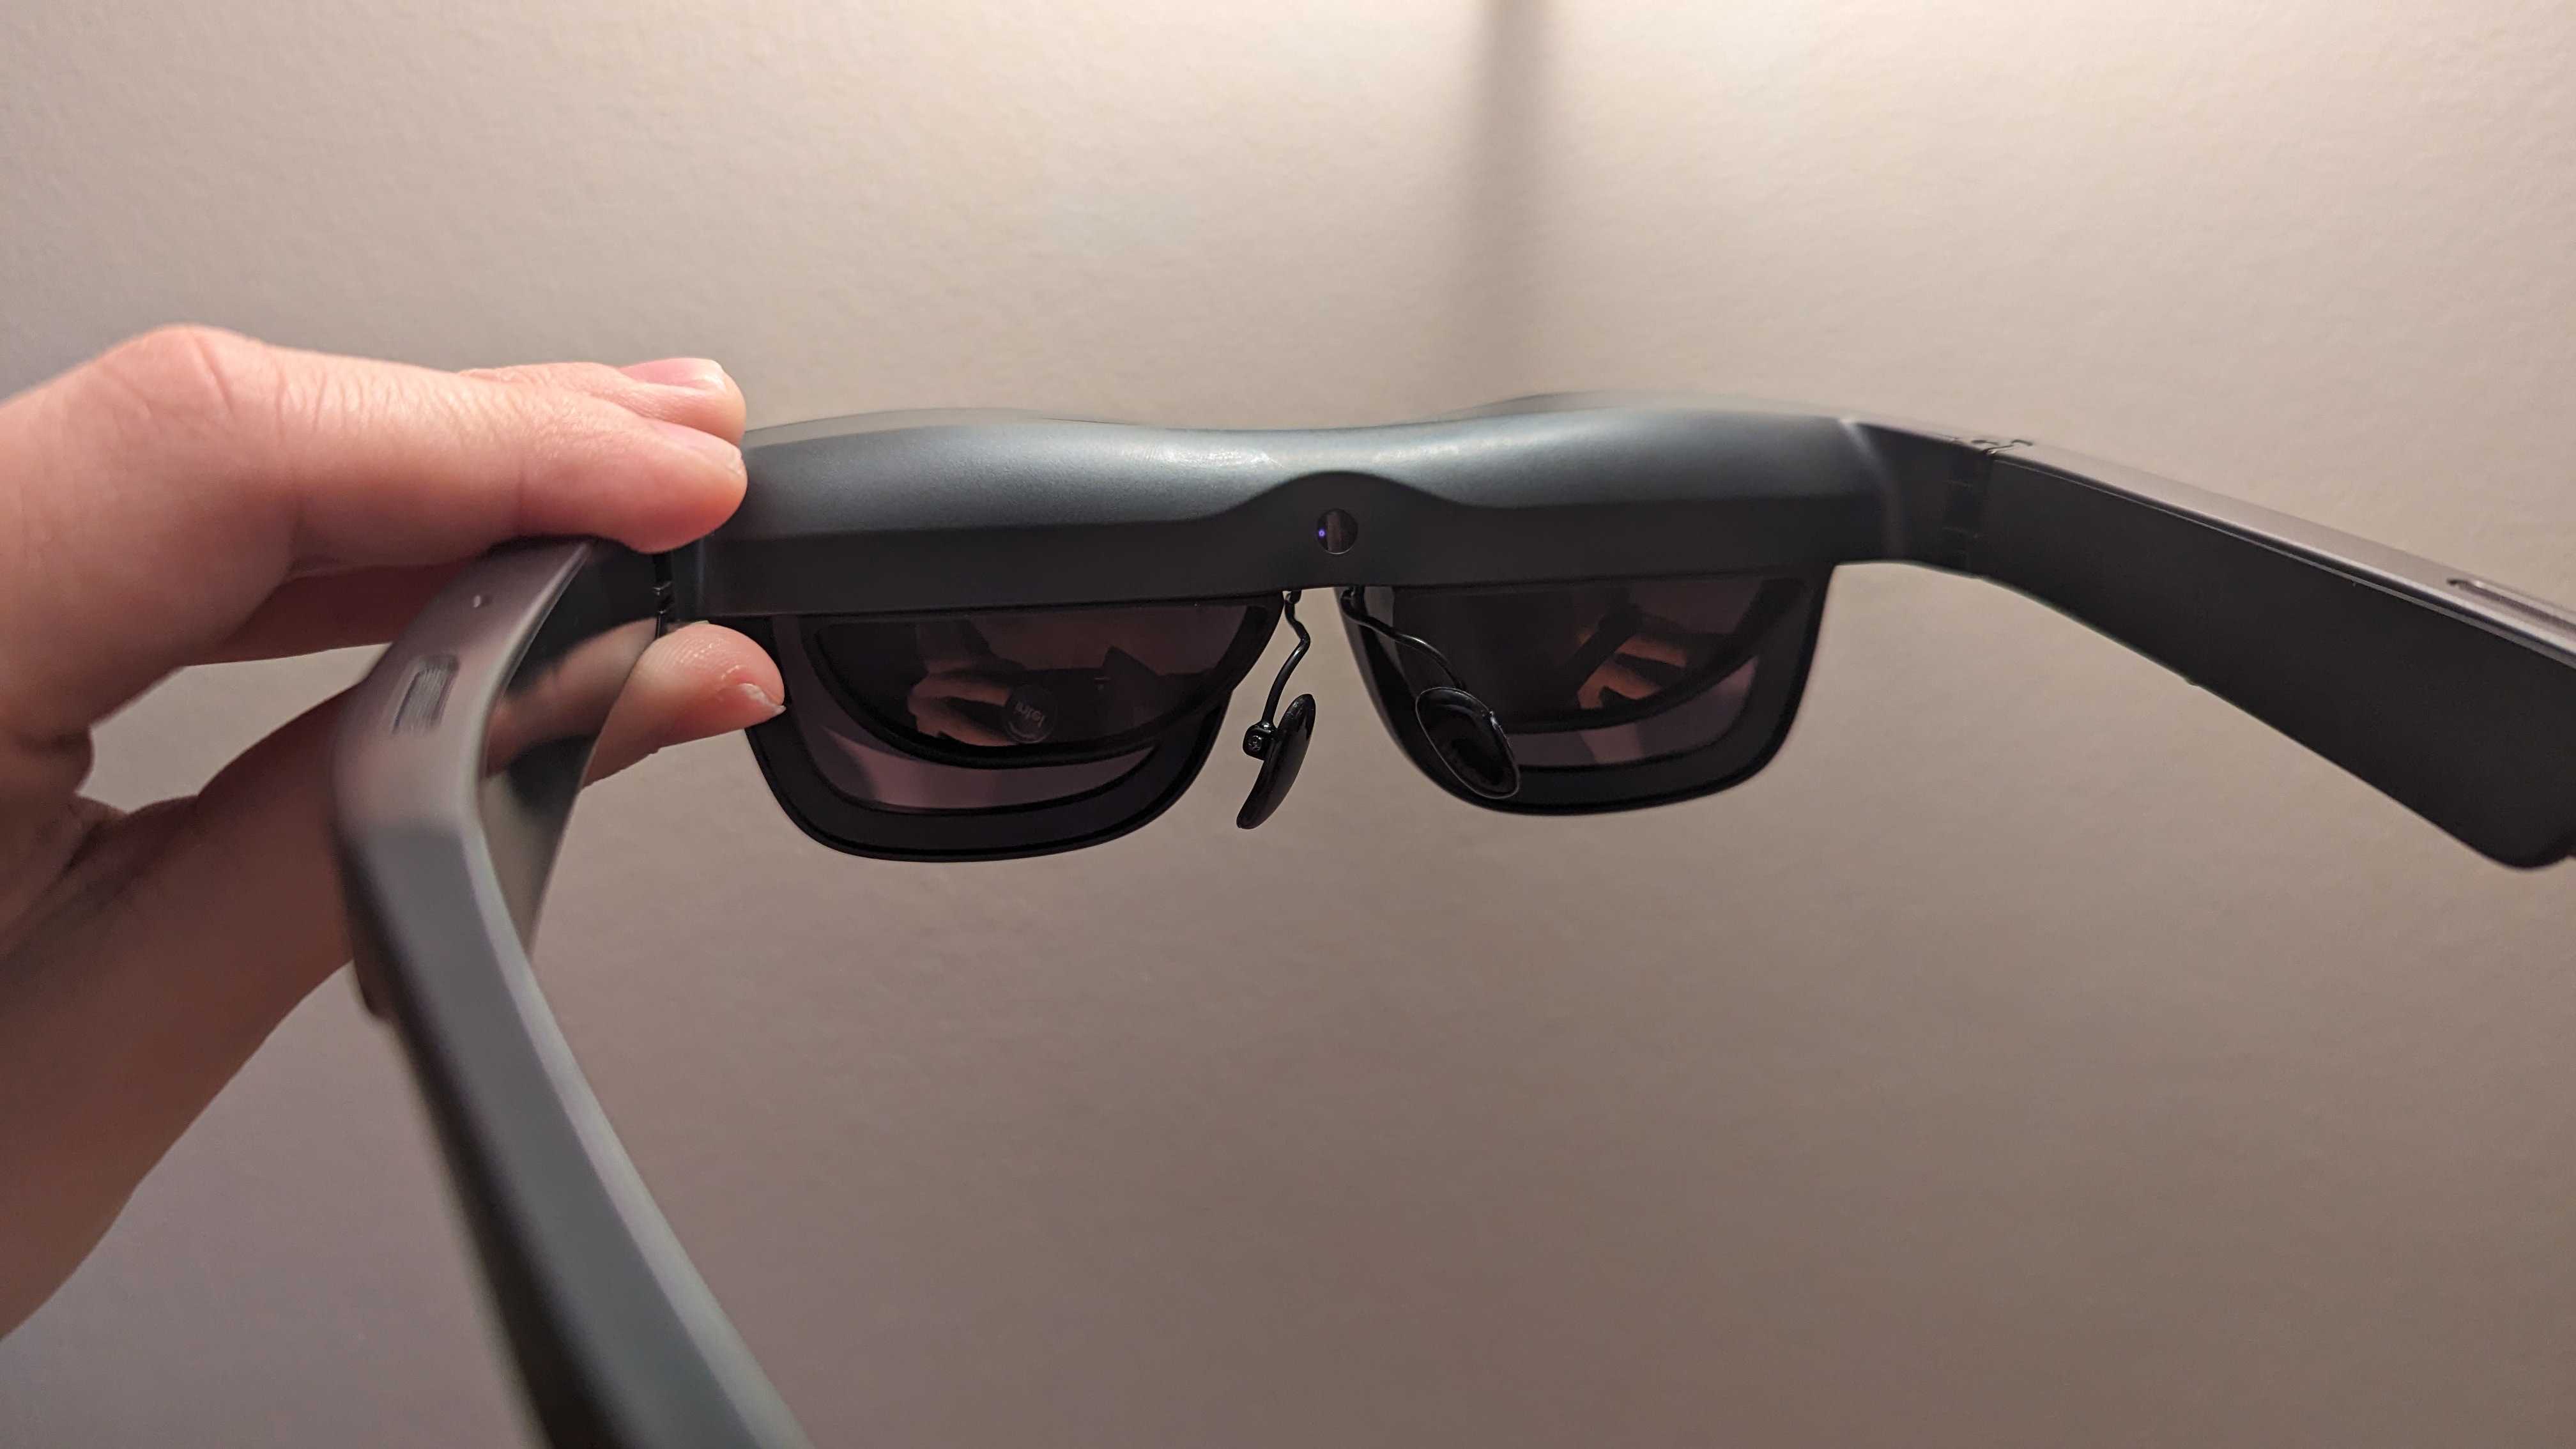 Las gafas TCL Nxtwear S AR desde atrás, se puede ver el clip y las pantallas internas